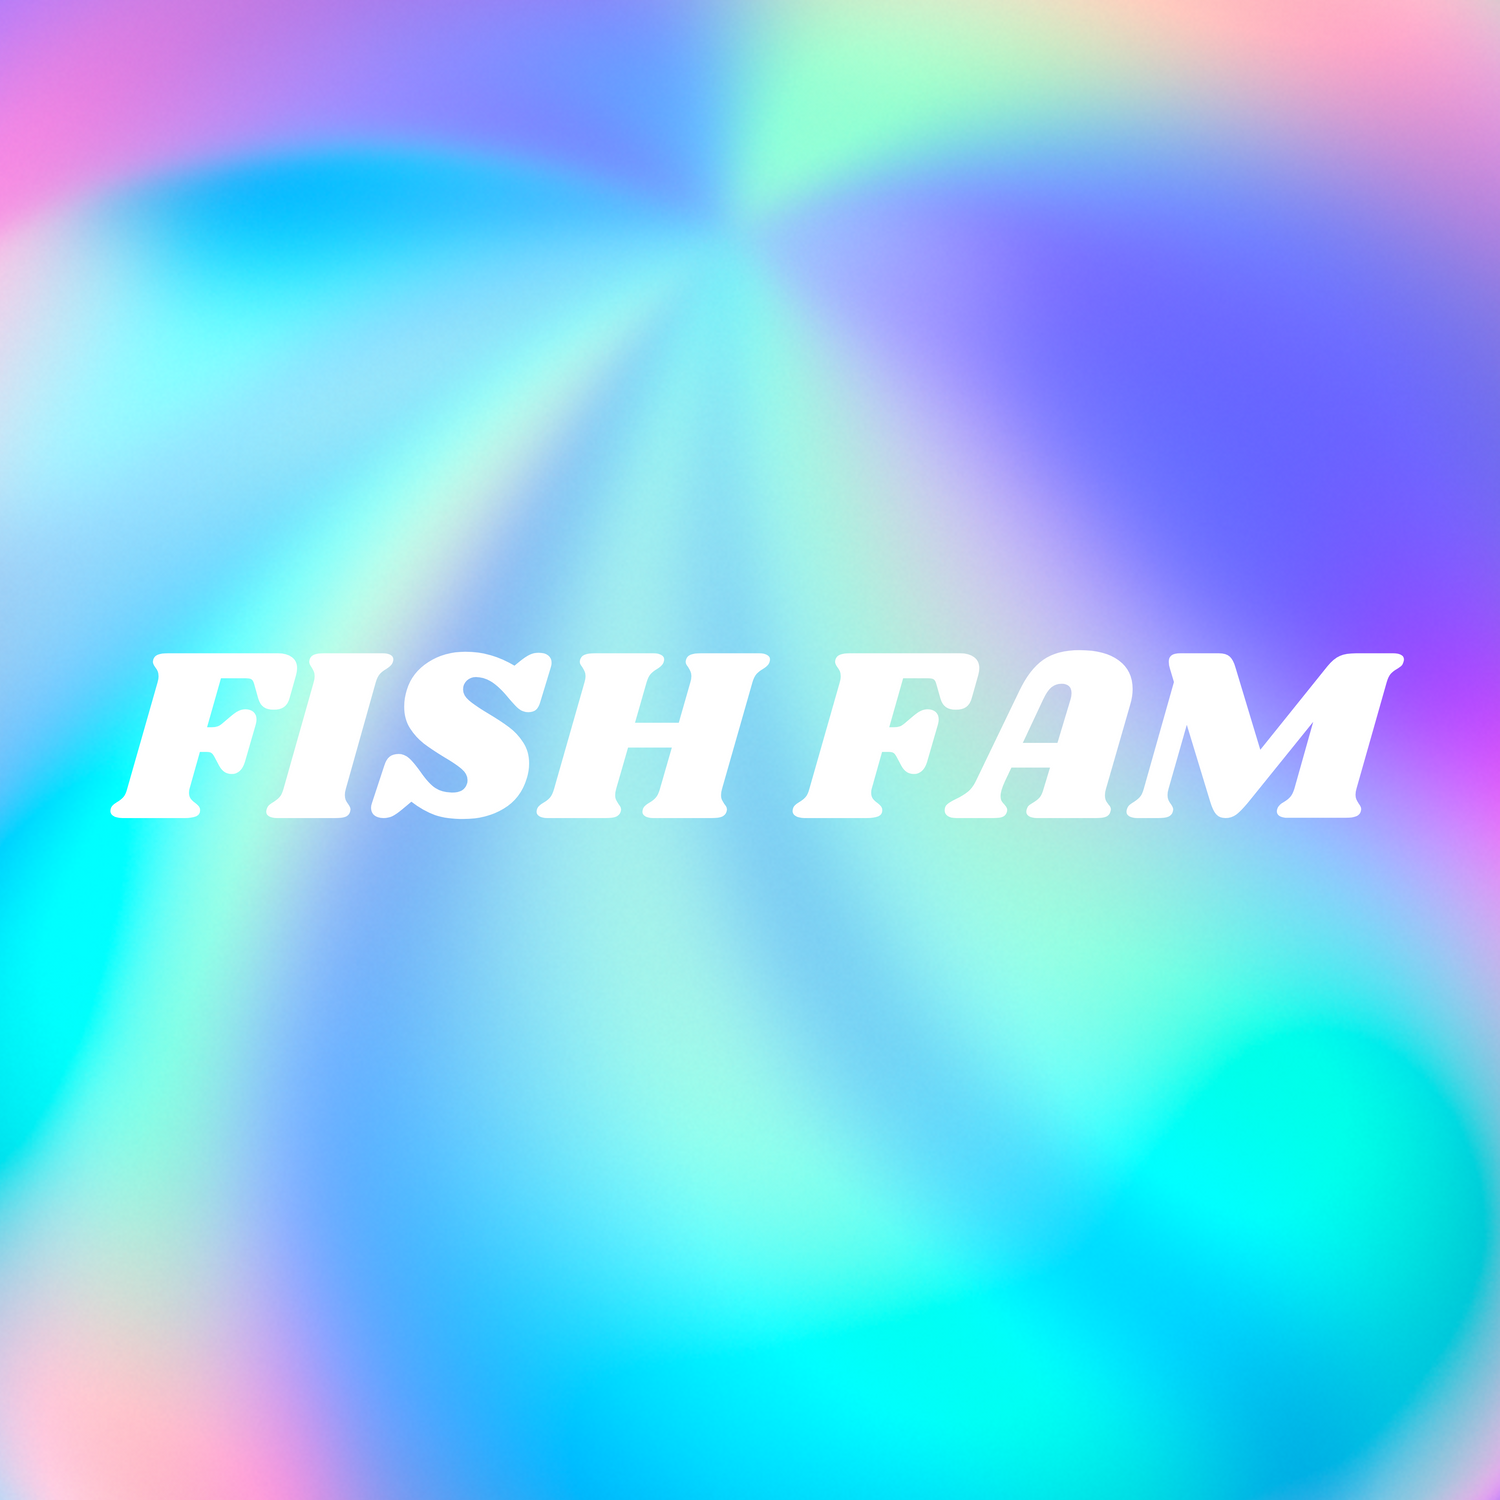 Fish Fam 🐟